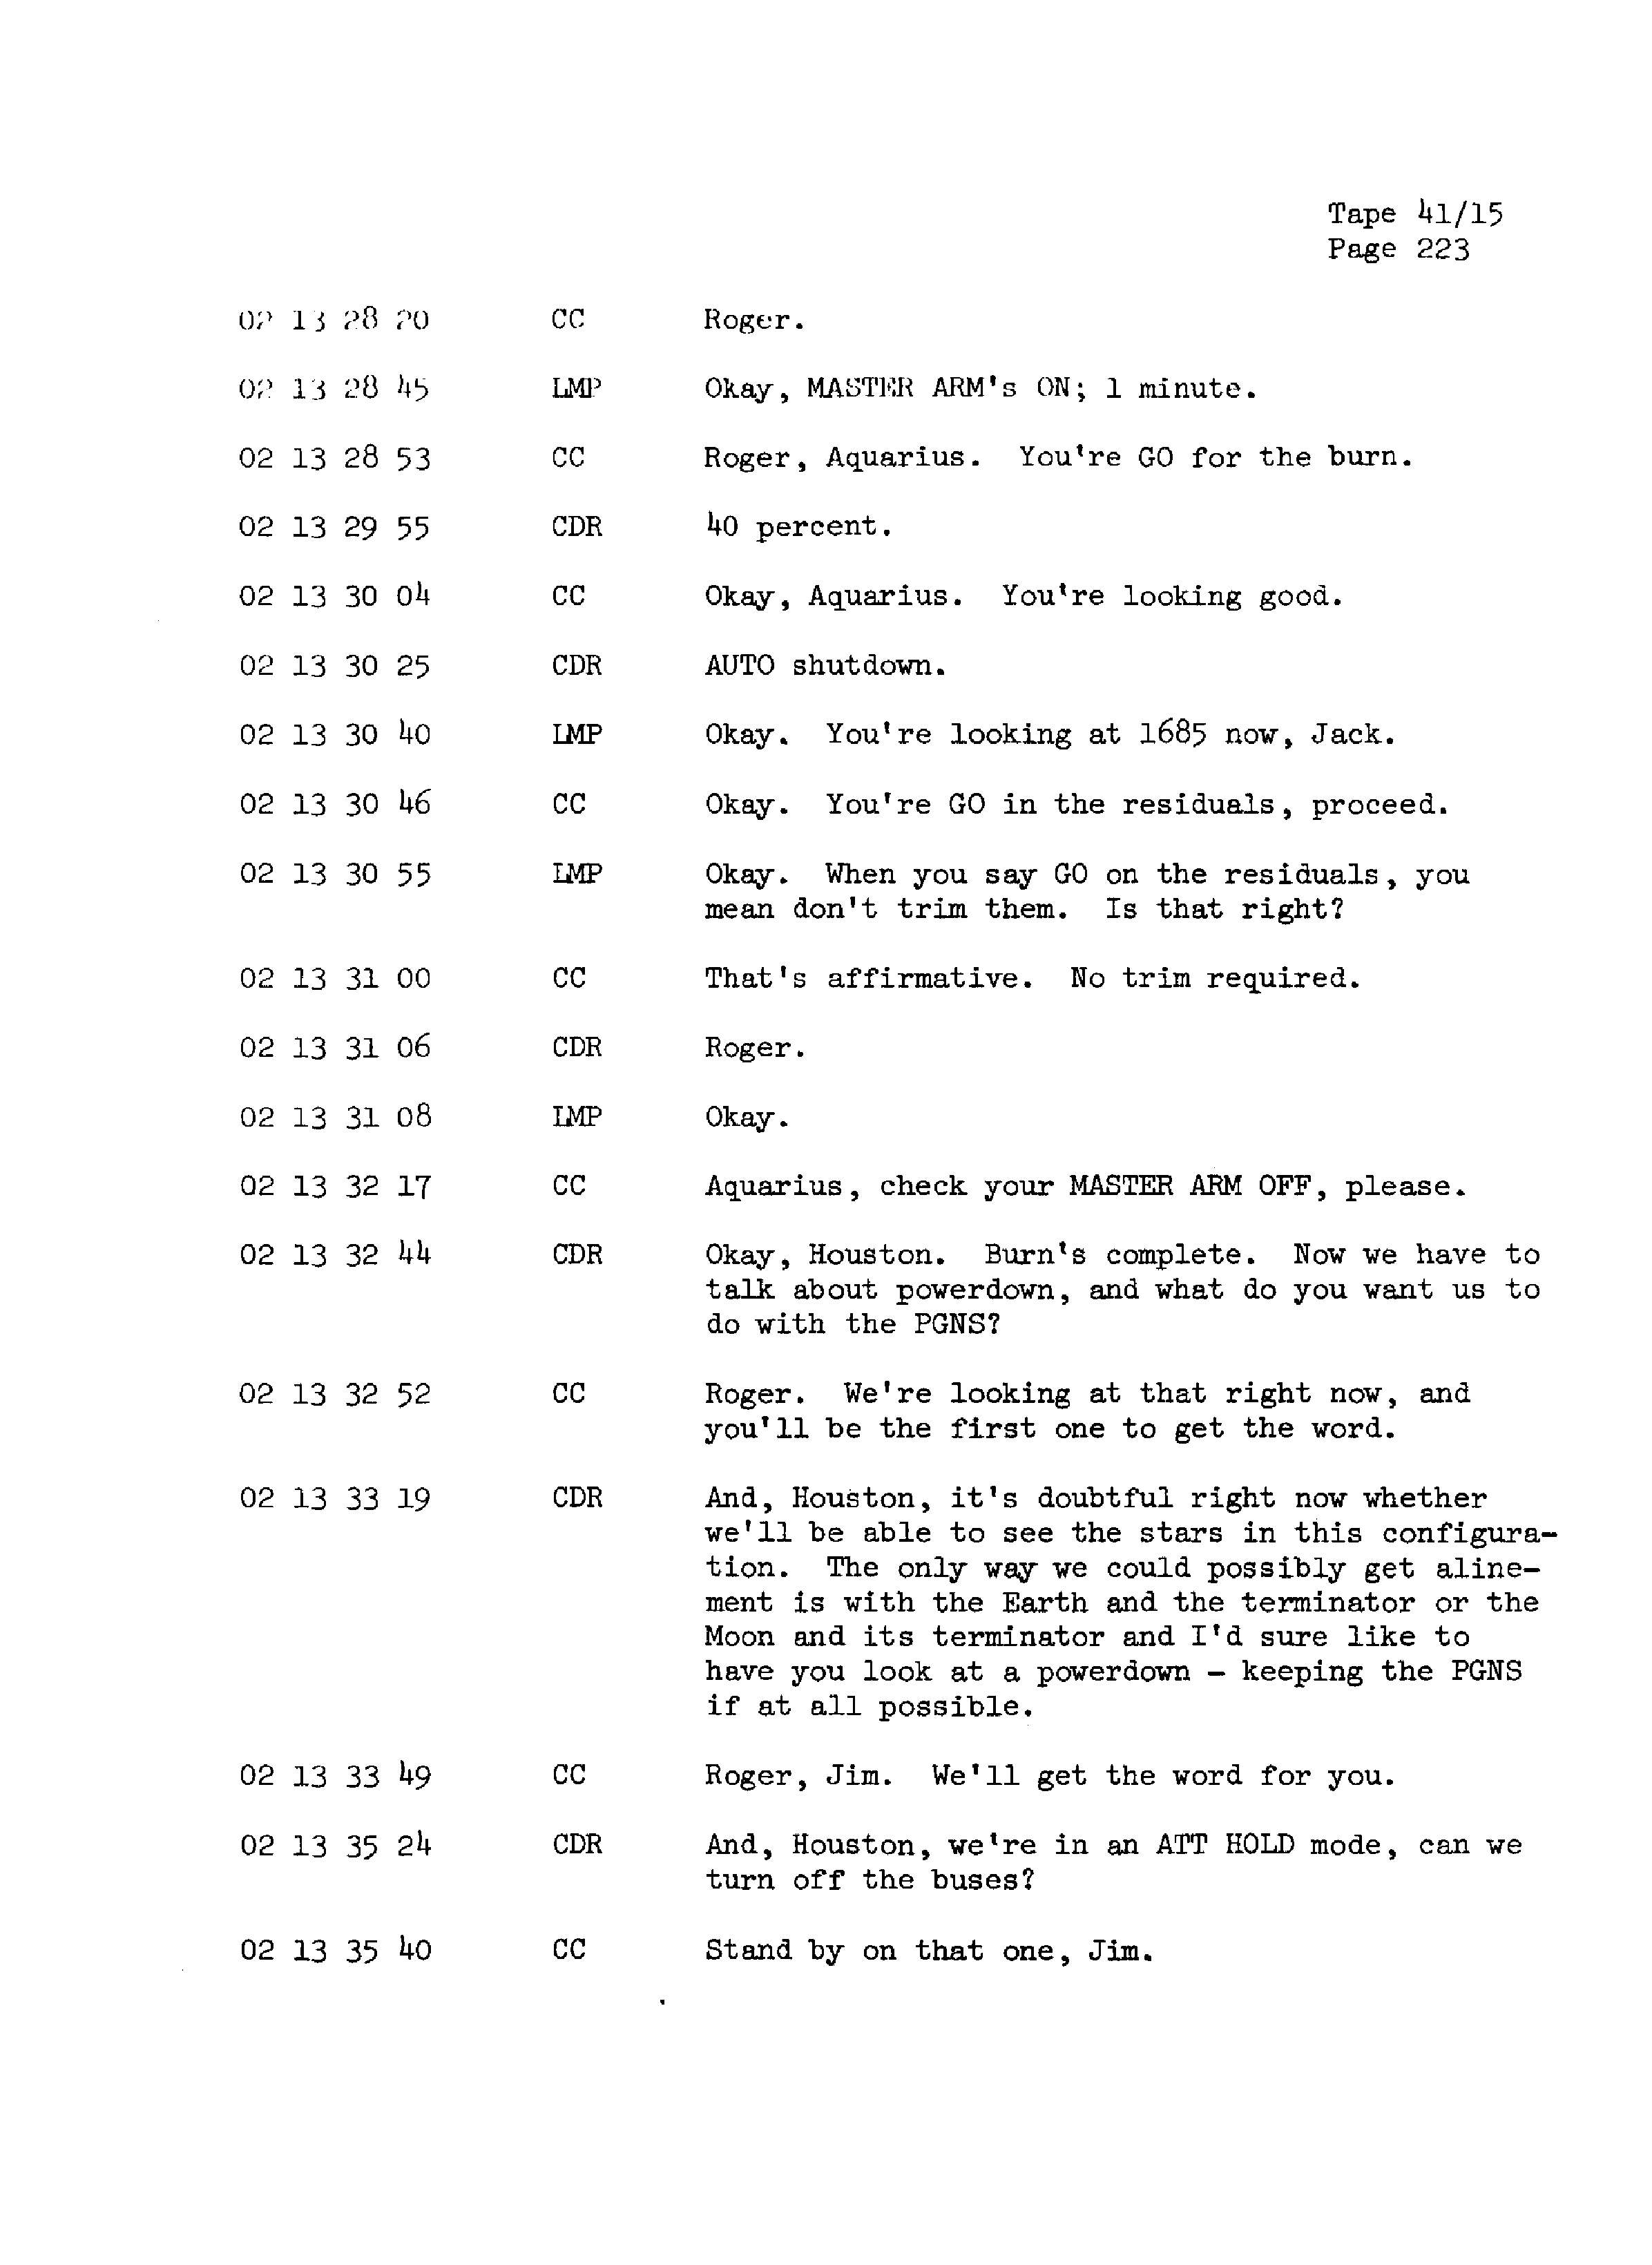 Page 230 of Apollo 13’s original transcript